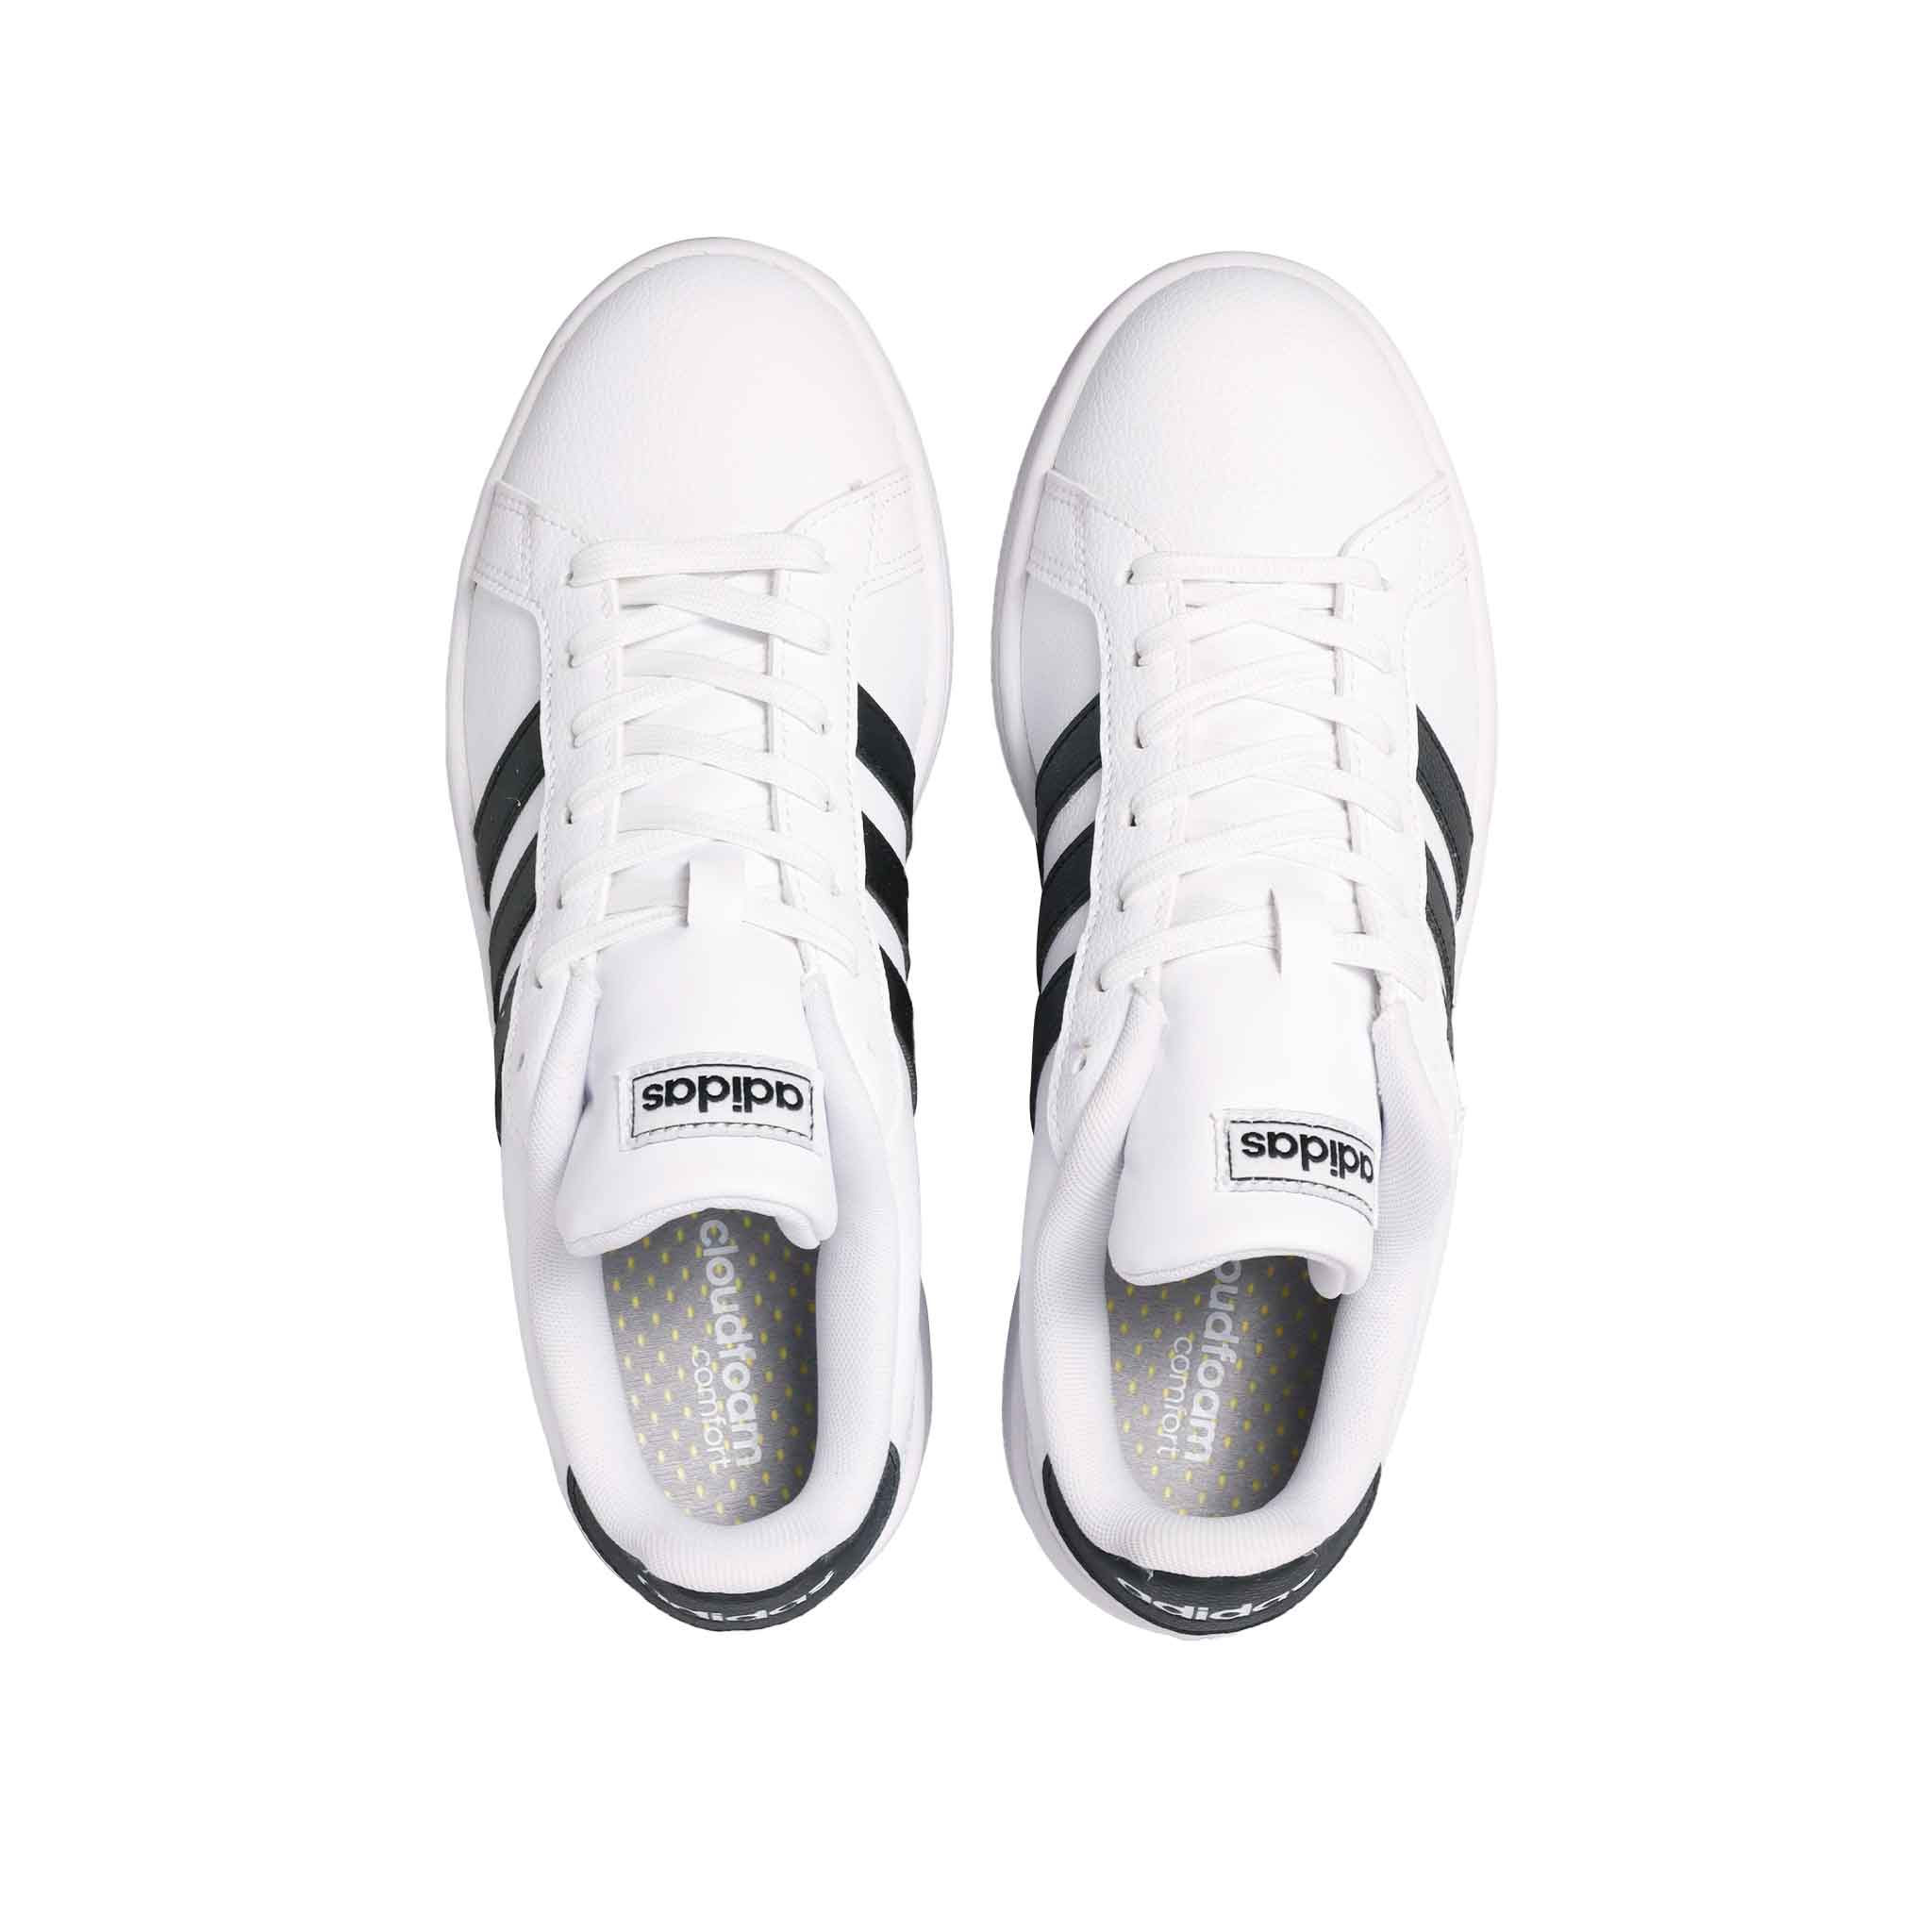 Adidas-Neo Grand Court Casual Blanco | Unicos Moderna